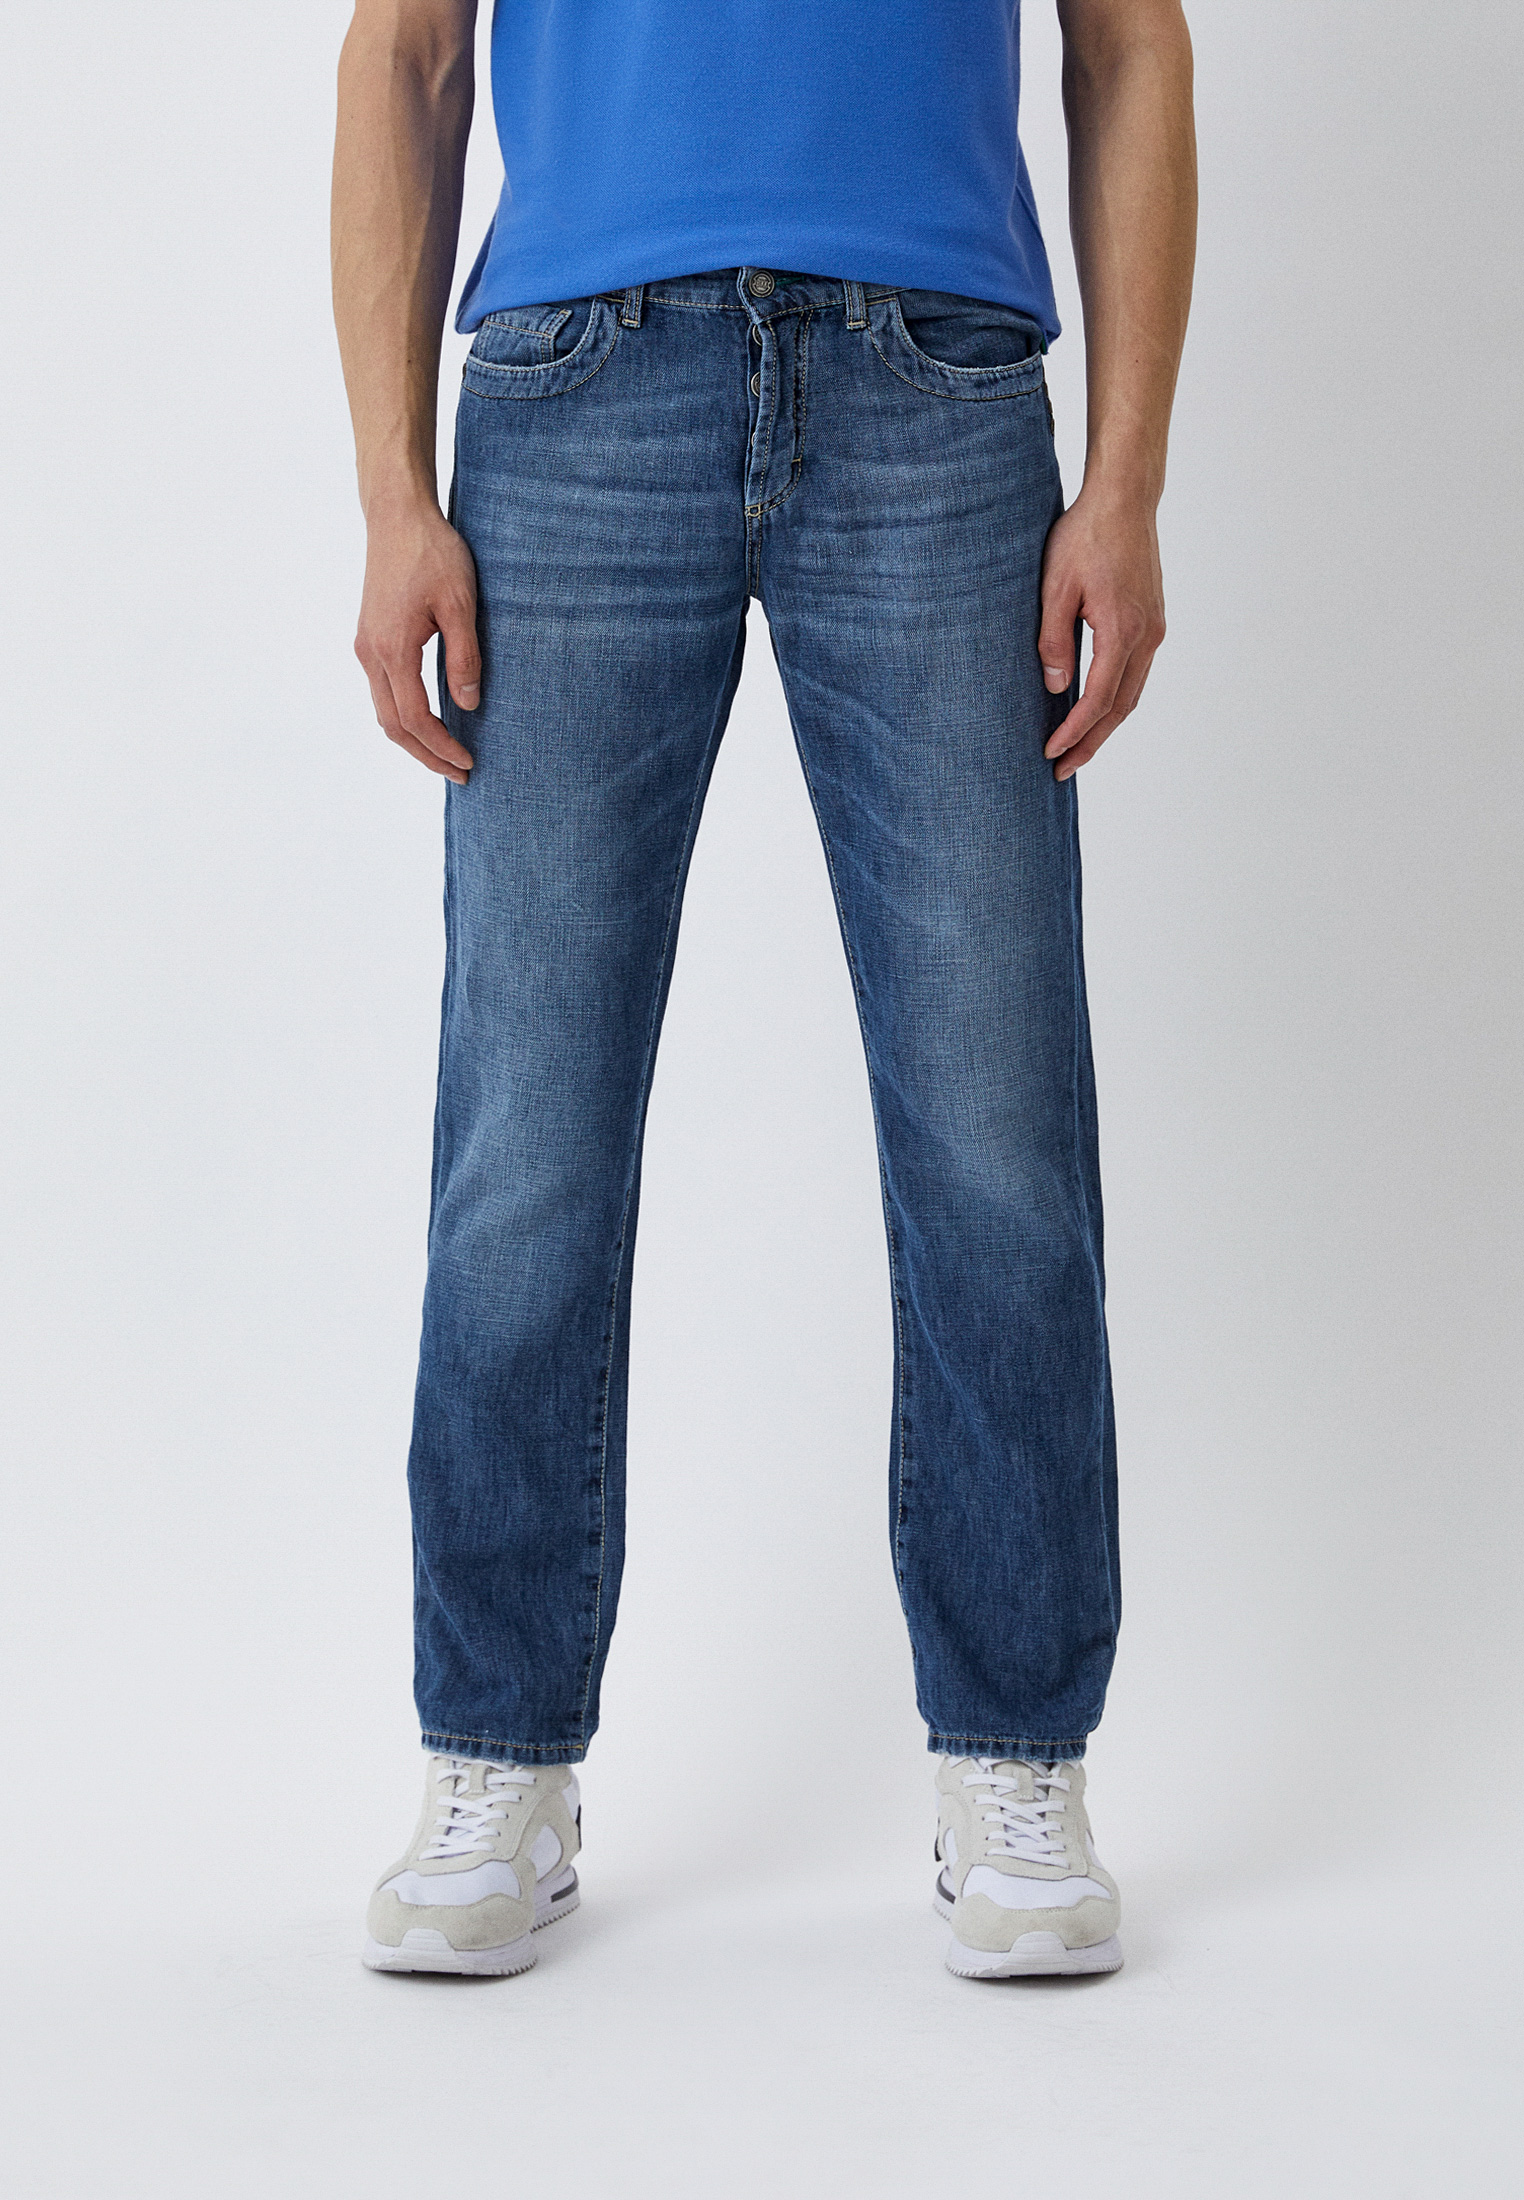 Мужские зауженные джинсы Bikkembergs (Биккембергс) CQ62AE1BNL11: изображение 1